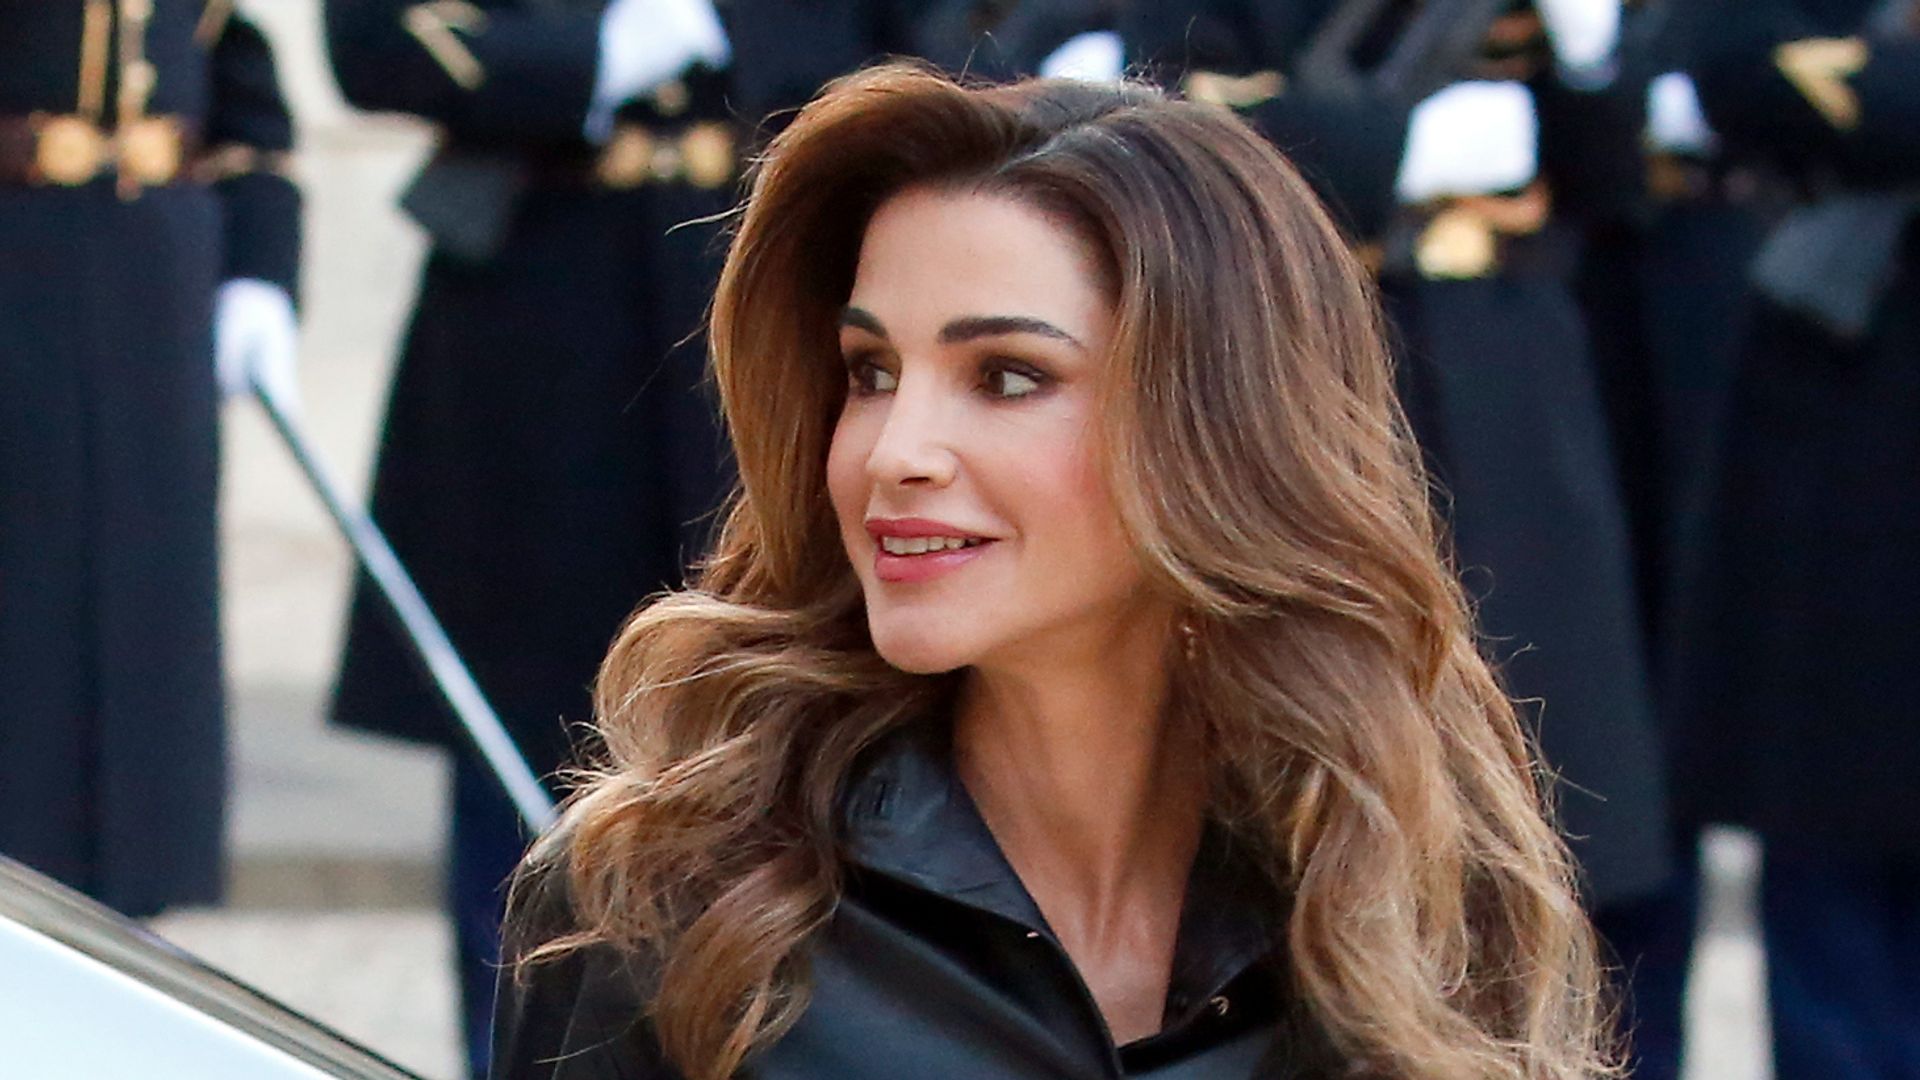 Queen Rania of Jordan 